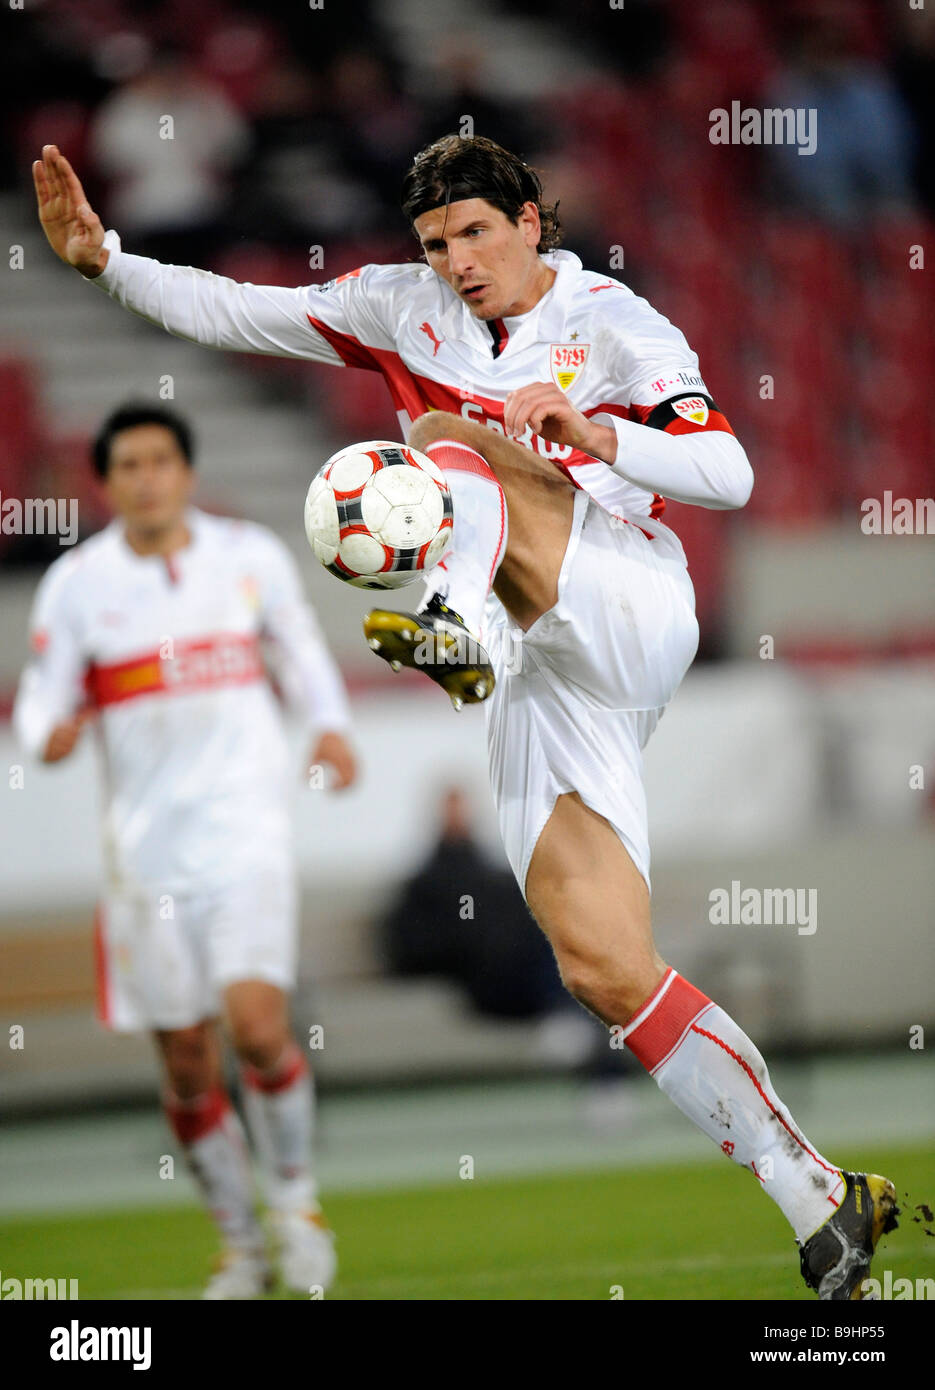 L'équipe nationale joueur Mario Gomez, le VfB Stuttgart, le tir d'un objectif Banque D'Images